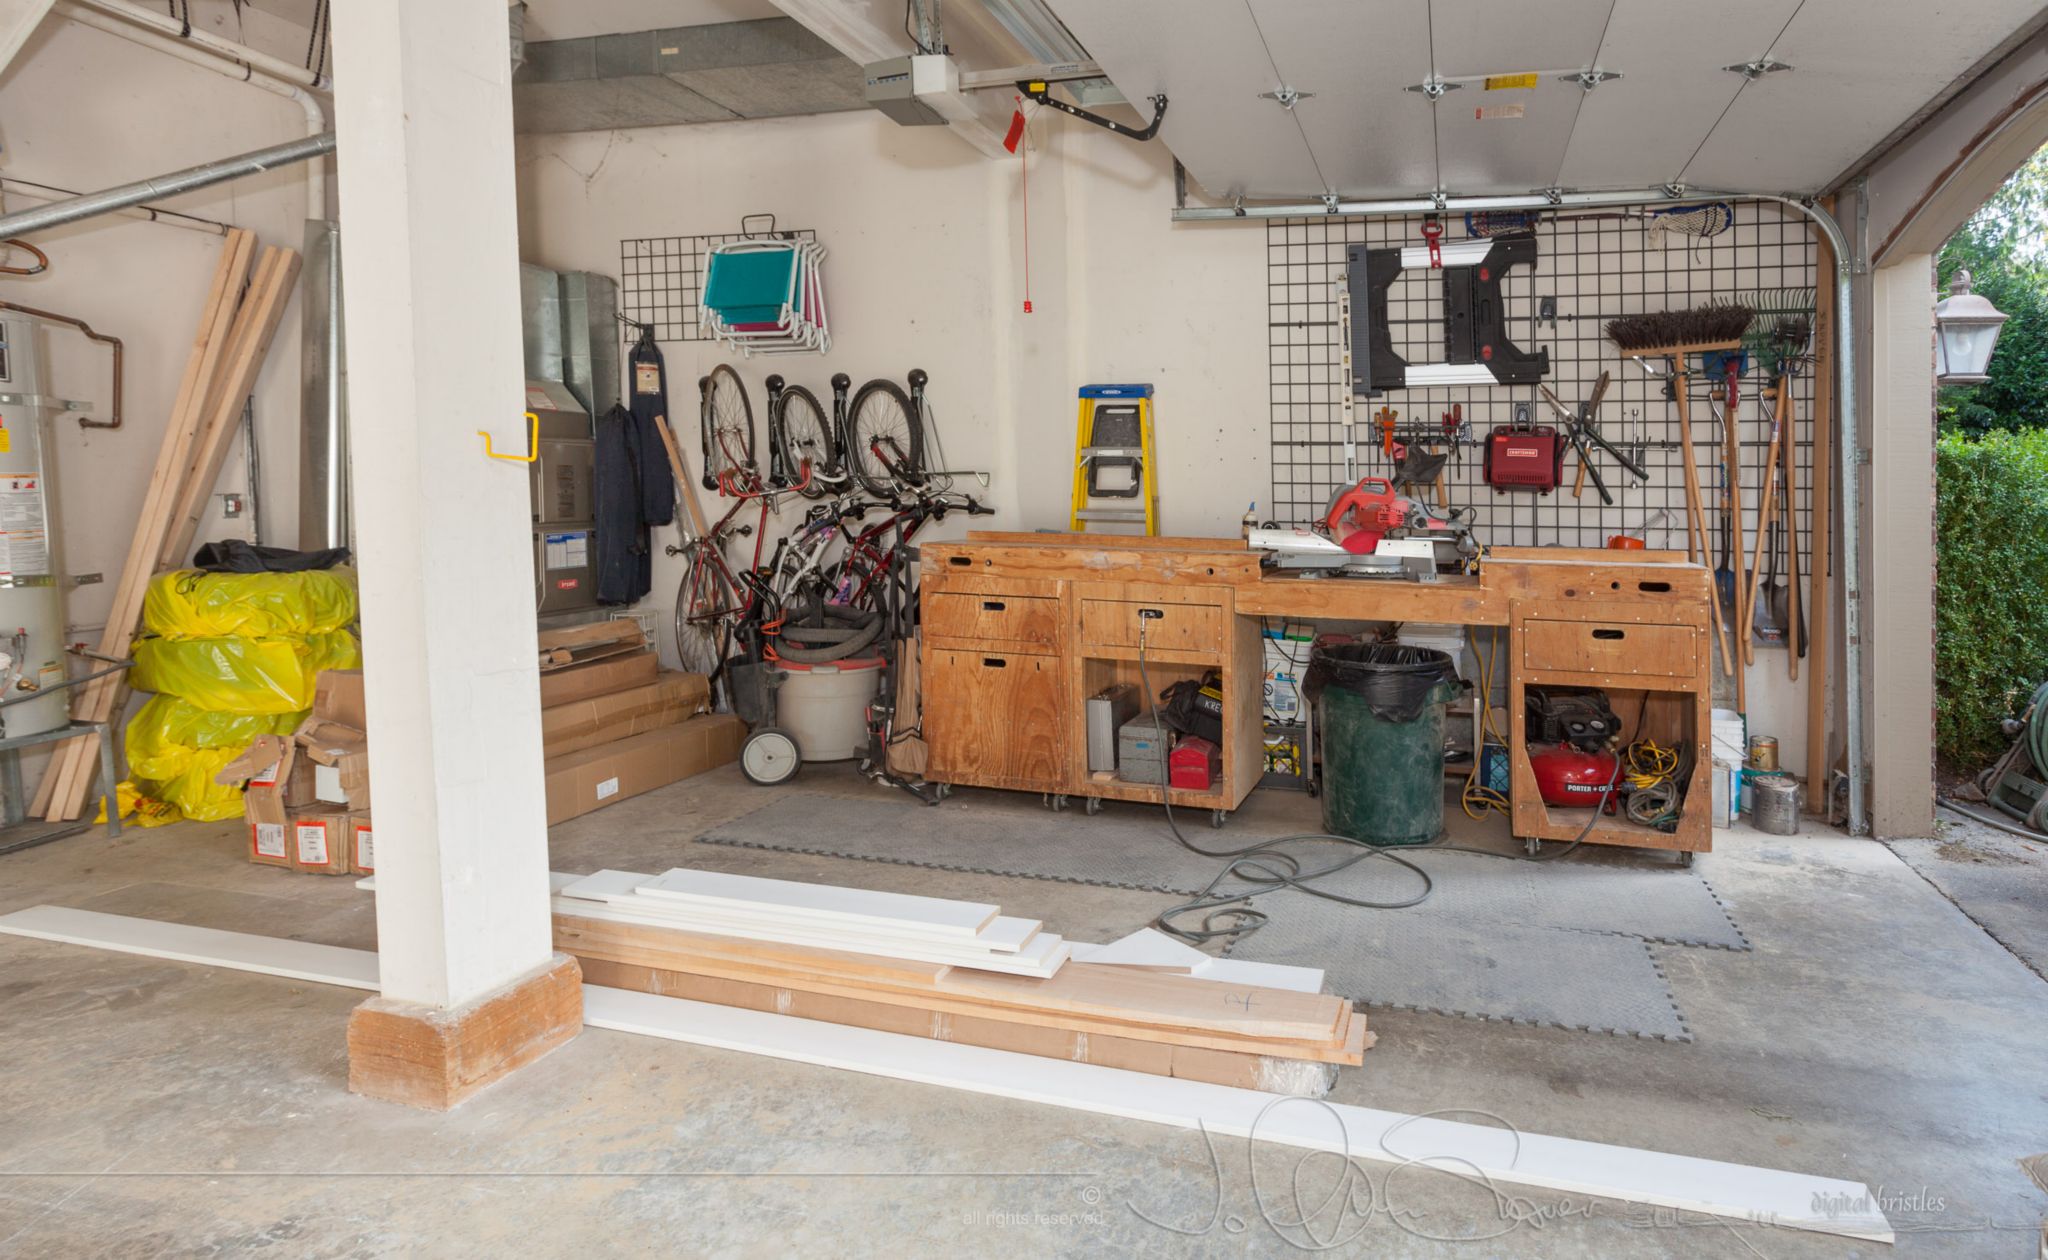 Mobile workshop in the garage